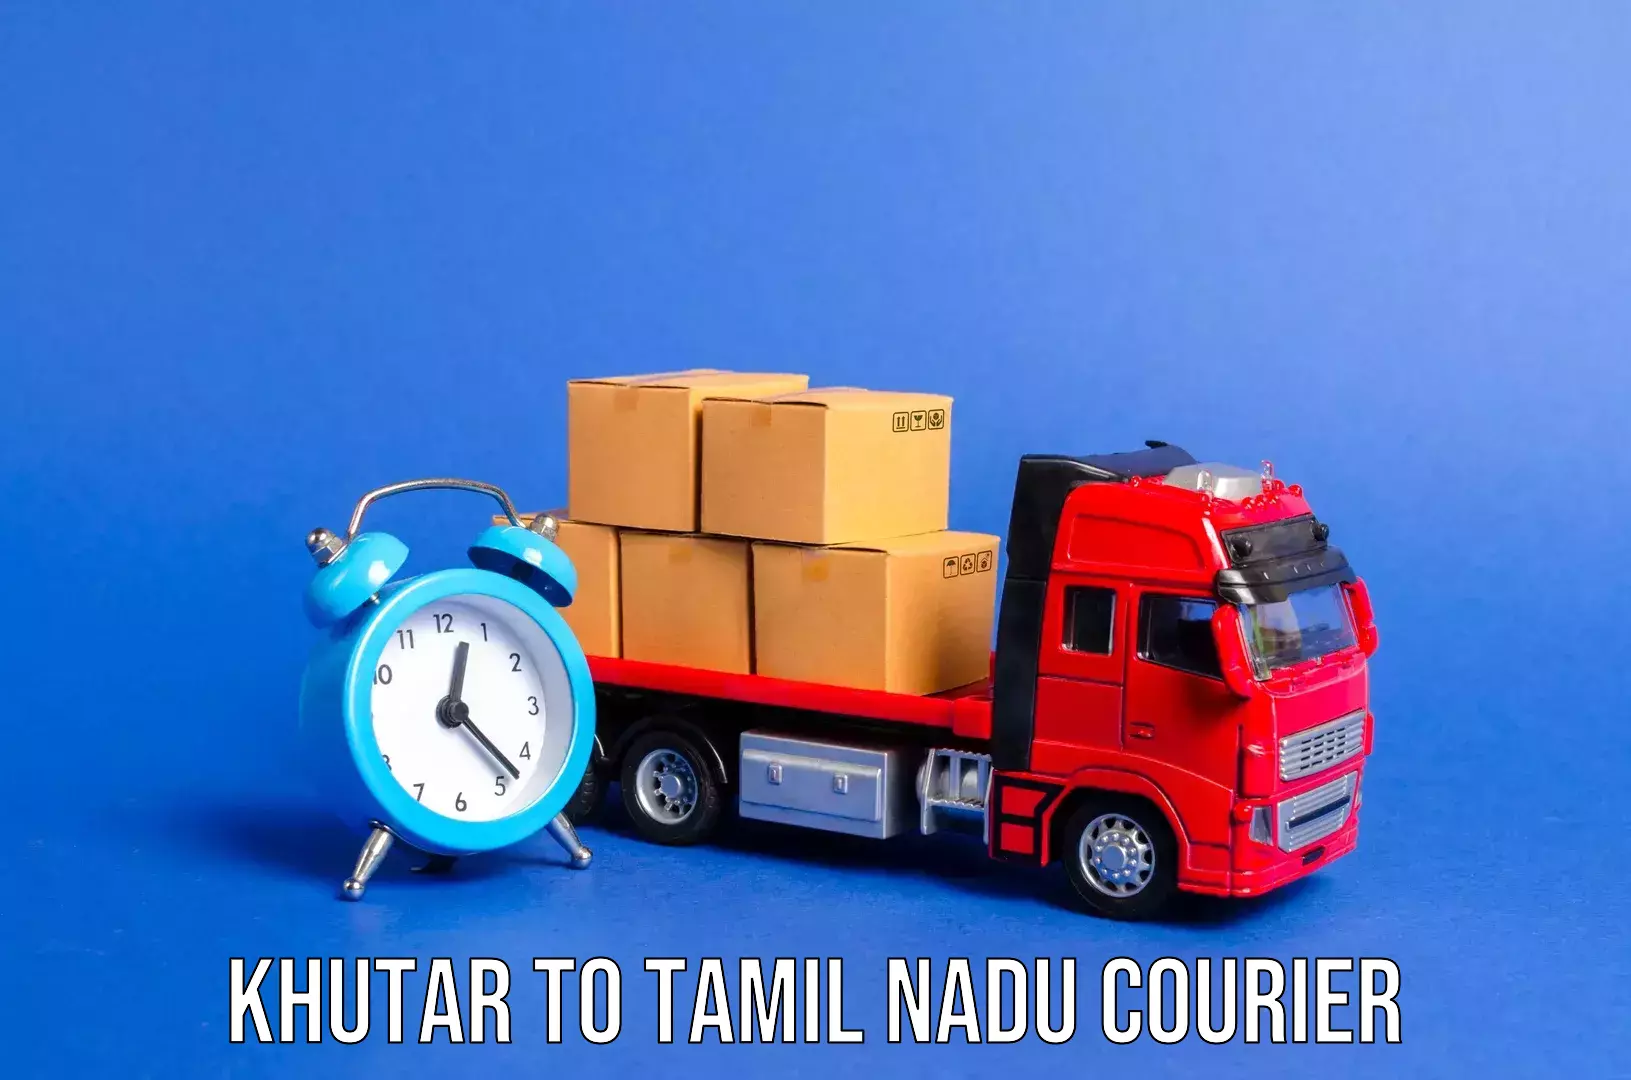 Doorstep luggage pickup in Khutar to Tamil Nadu